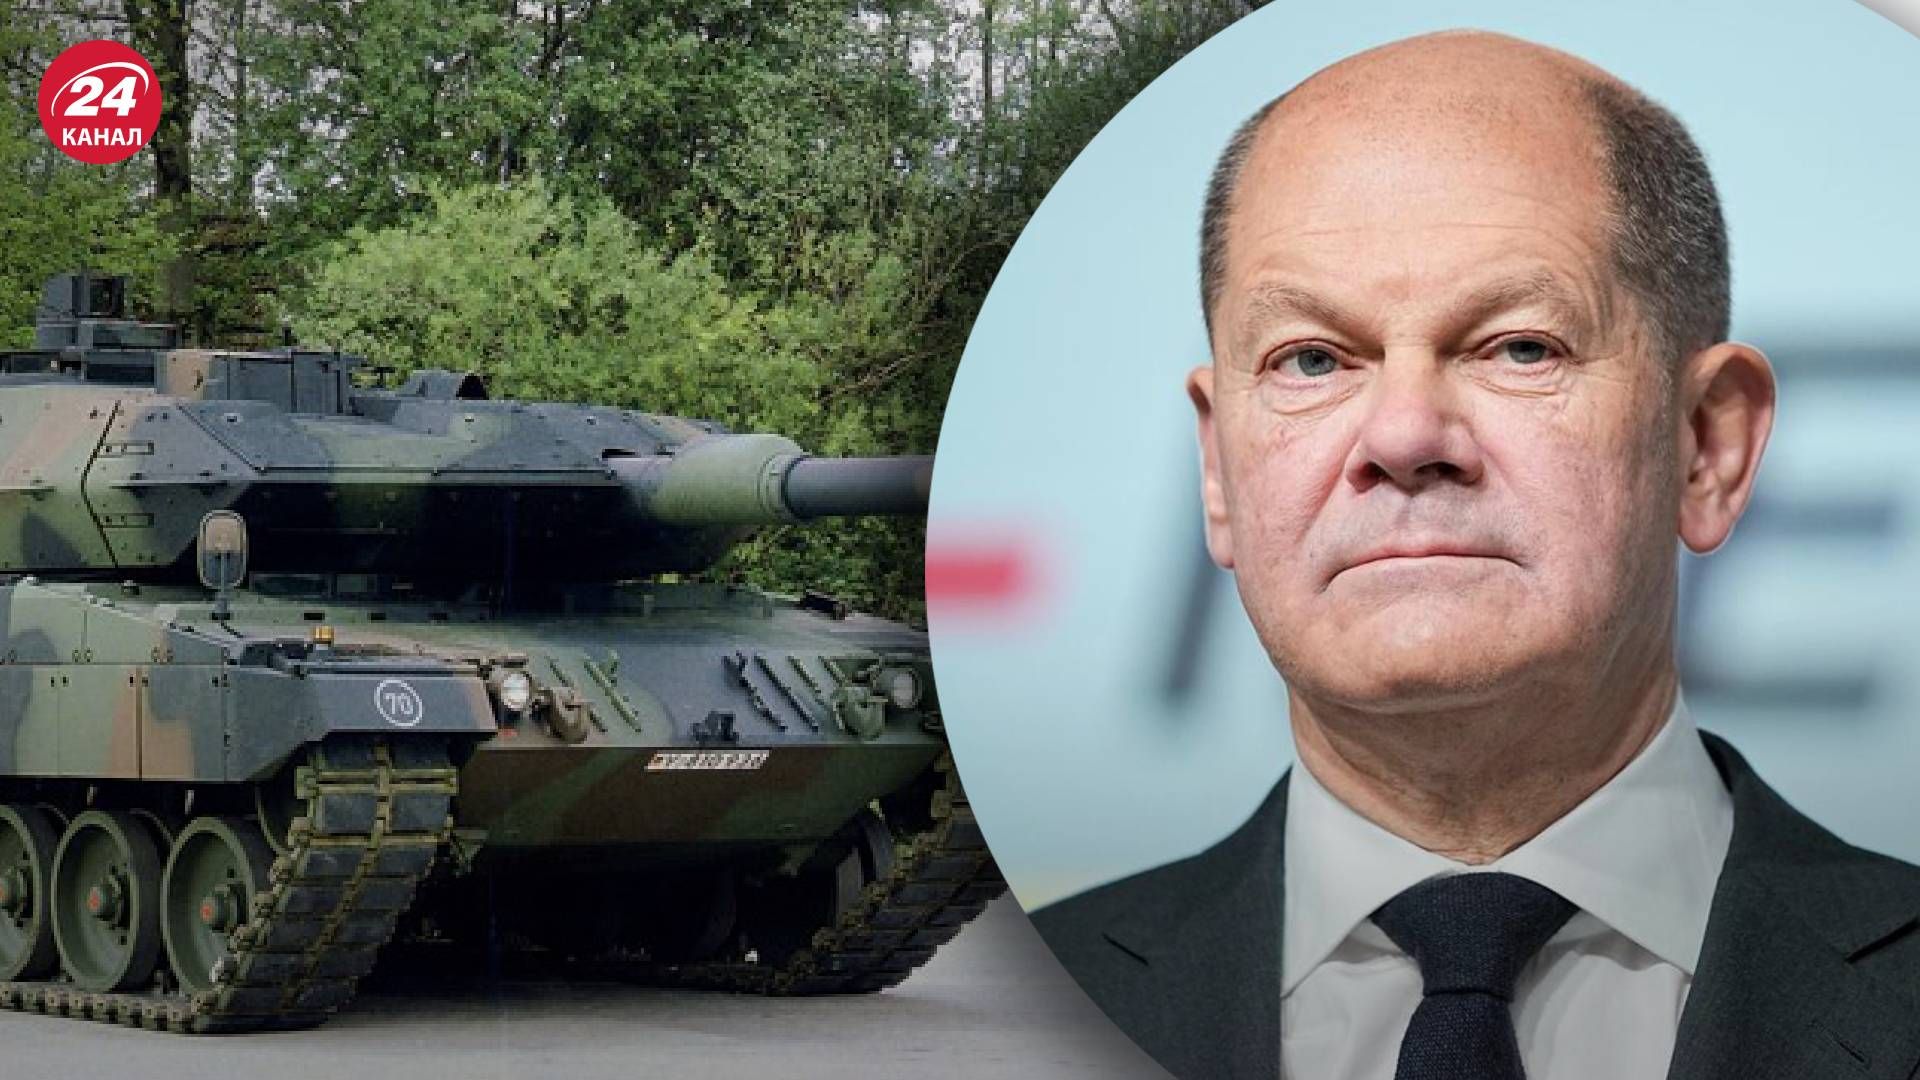 Германия предоставляет Украине 14 танков Leopard 2A6 - официальное заявление Шольца